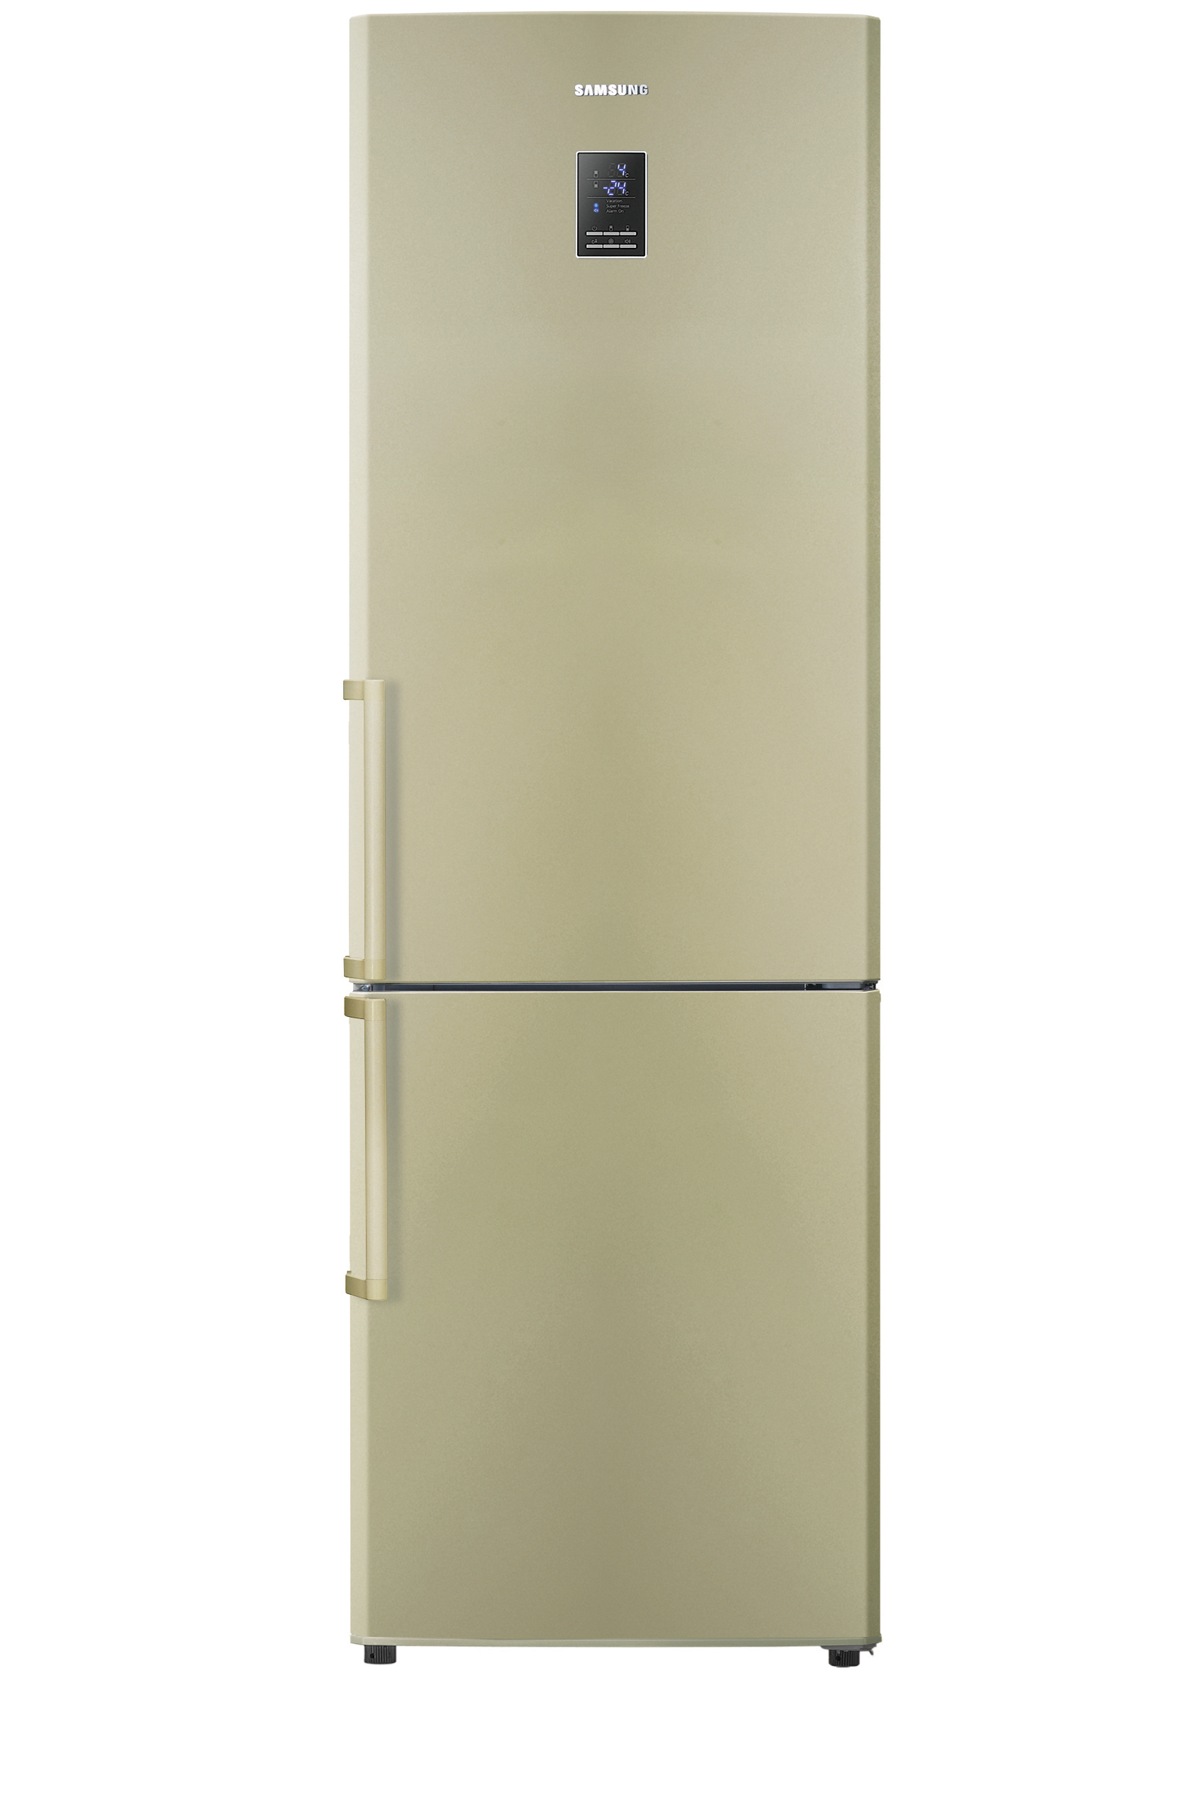 Réfrigérateur 1 porte H155L60 316L 39dB sans Freezer ELECTROLUX